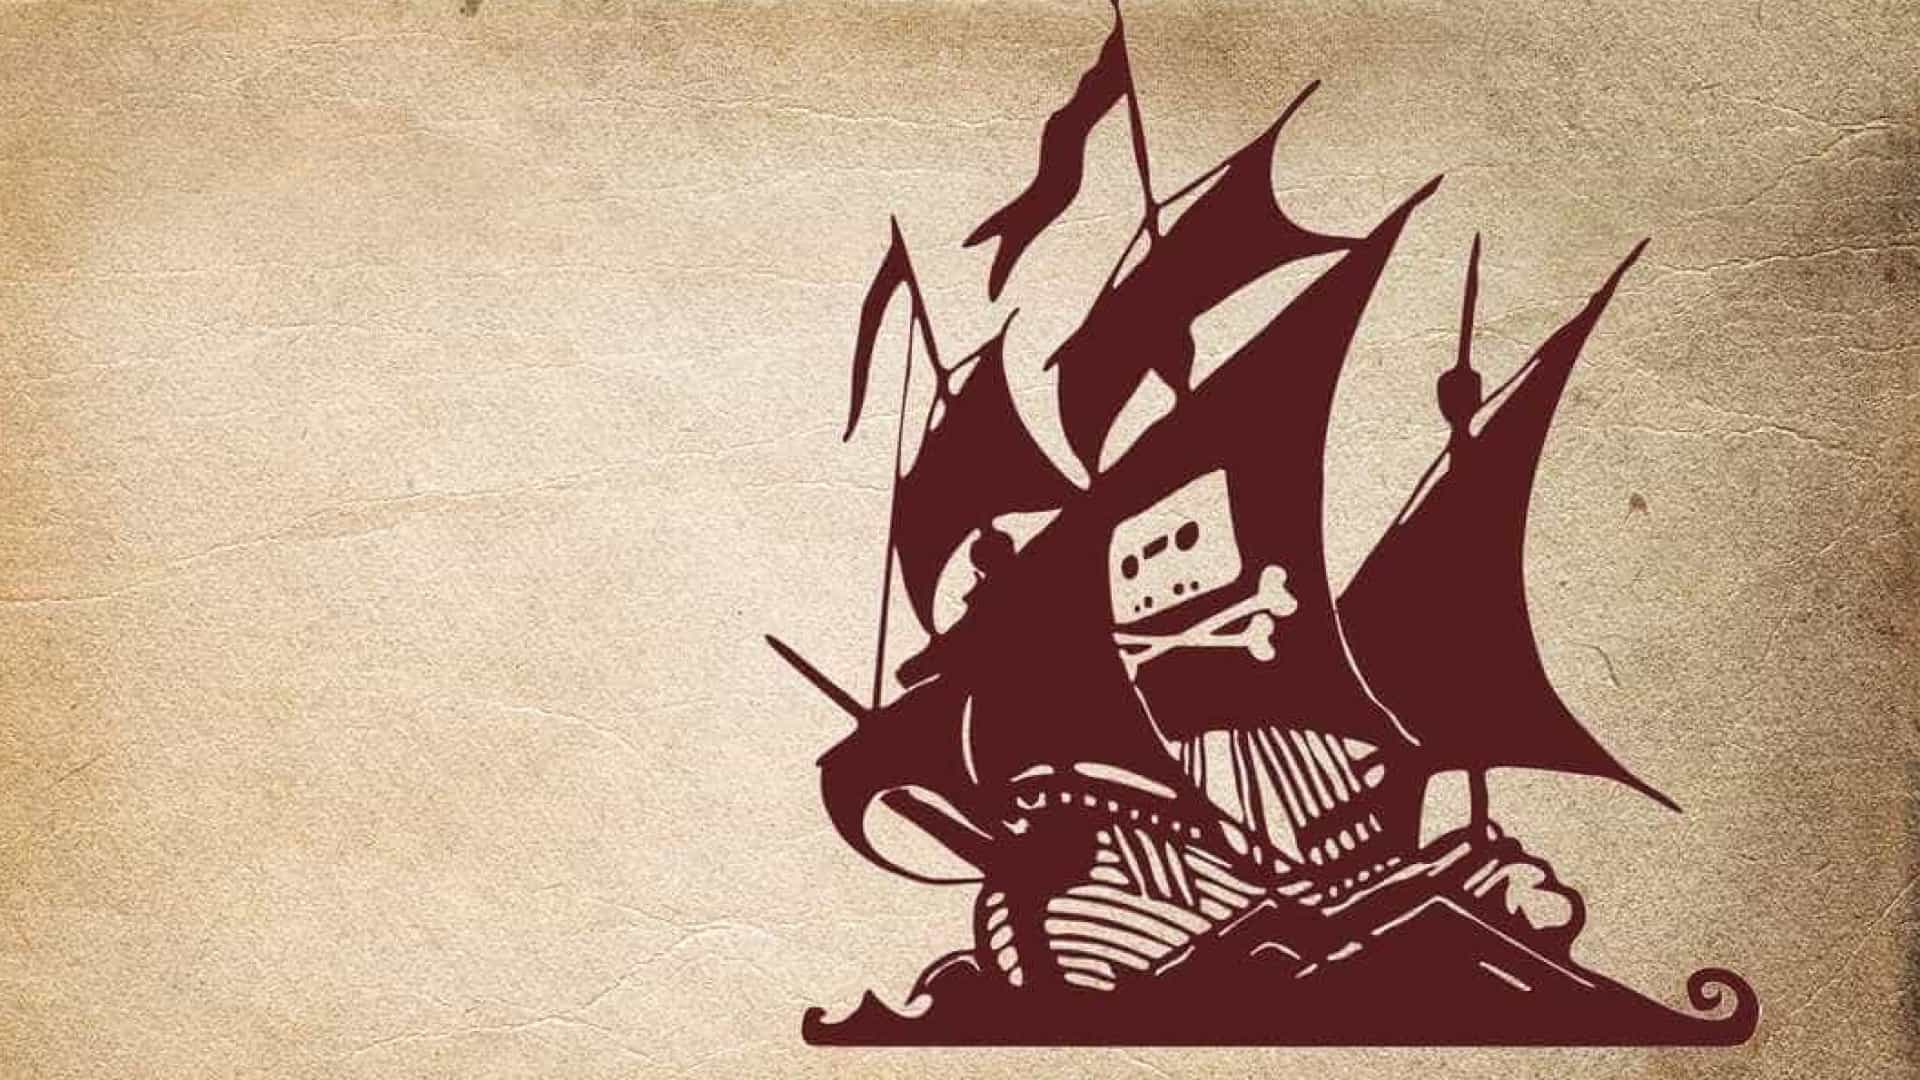 Série sobre o The Pirate Bay vai começar a ser produzida